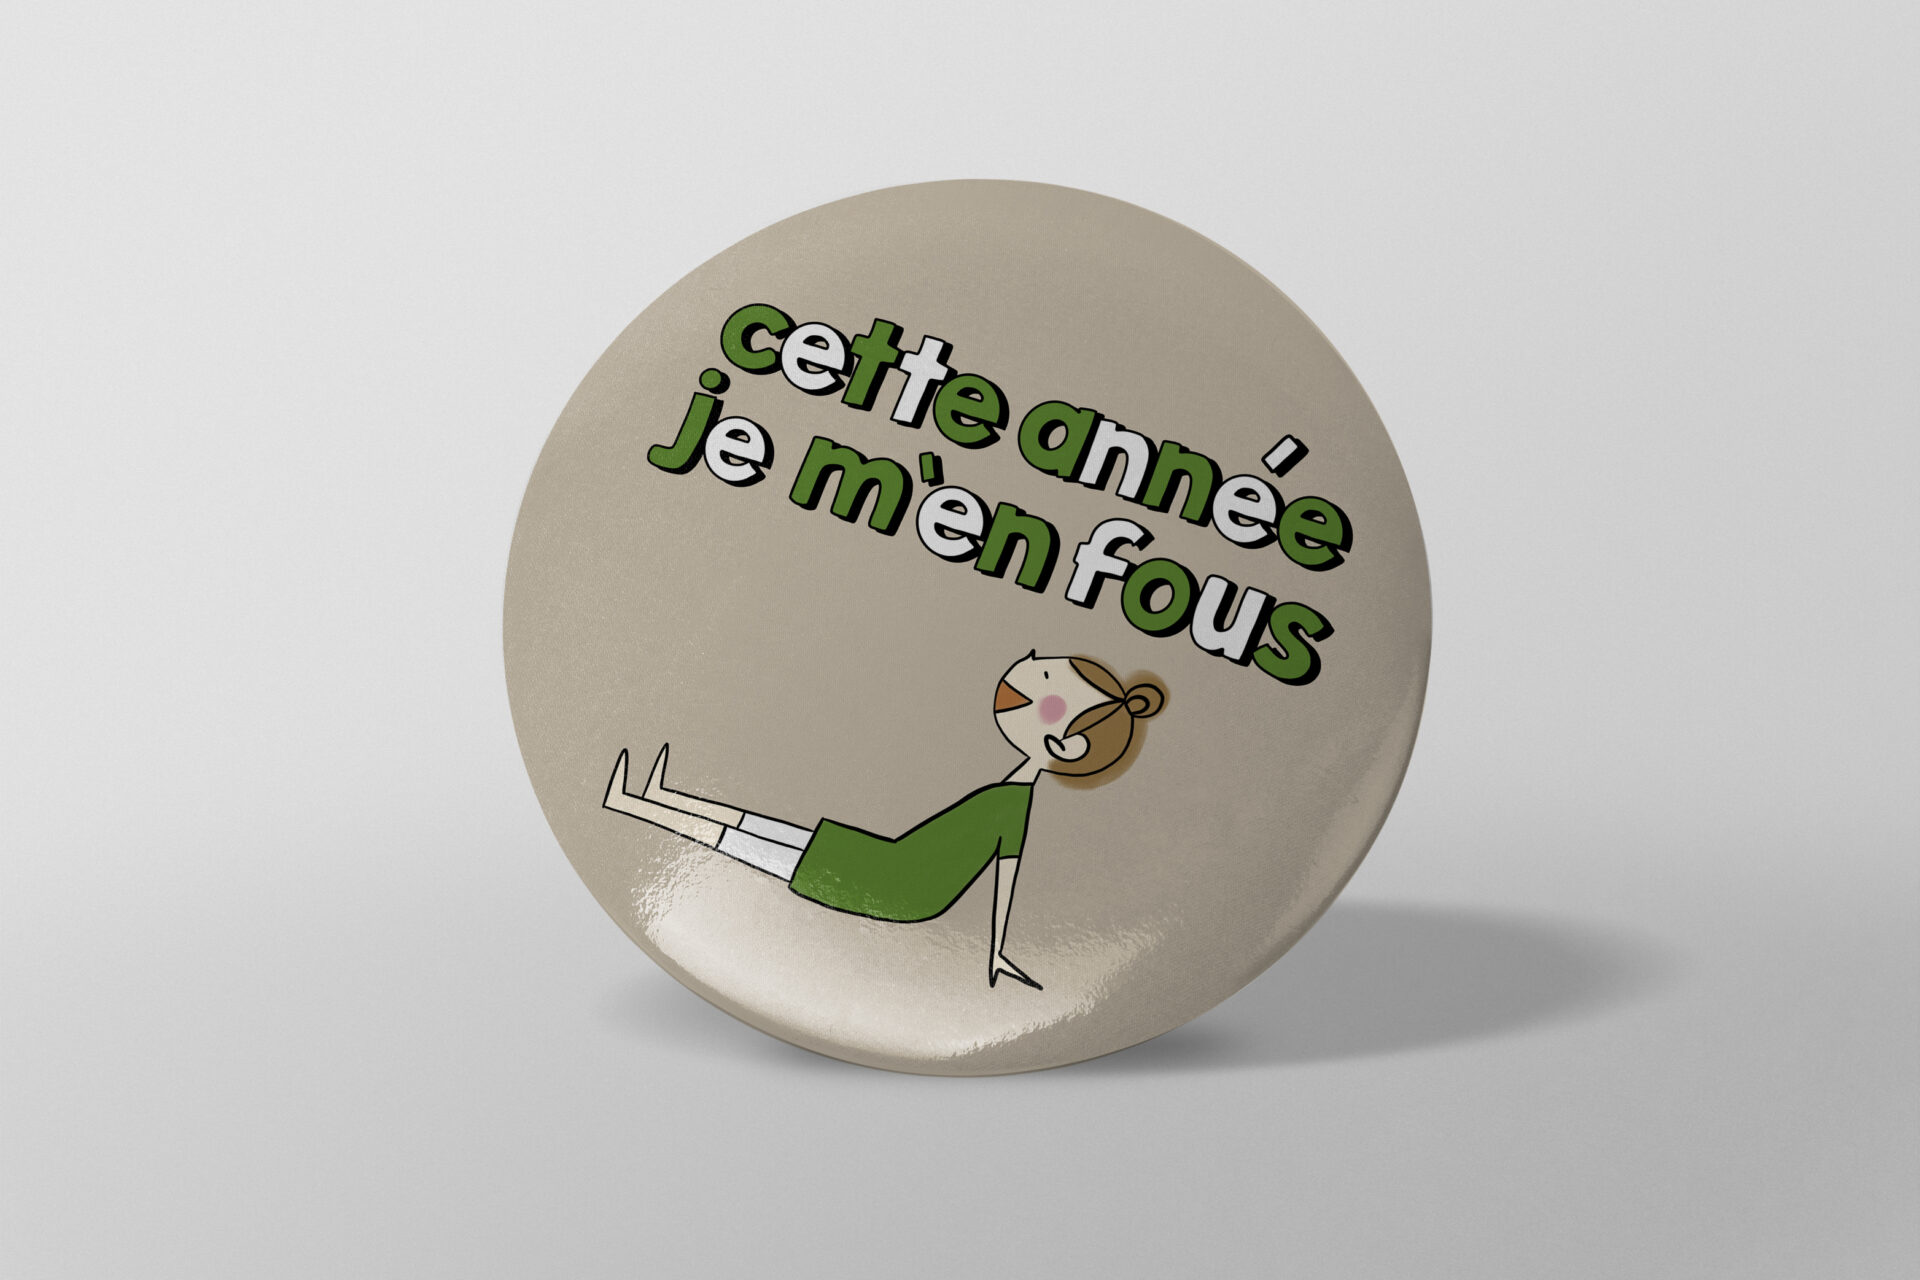 Boutique en ligne – France – shop - Badge rond - épingle pins – miroir – magnets– décapsuleur magnet – porte clé – Cette année, je m'en fous